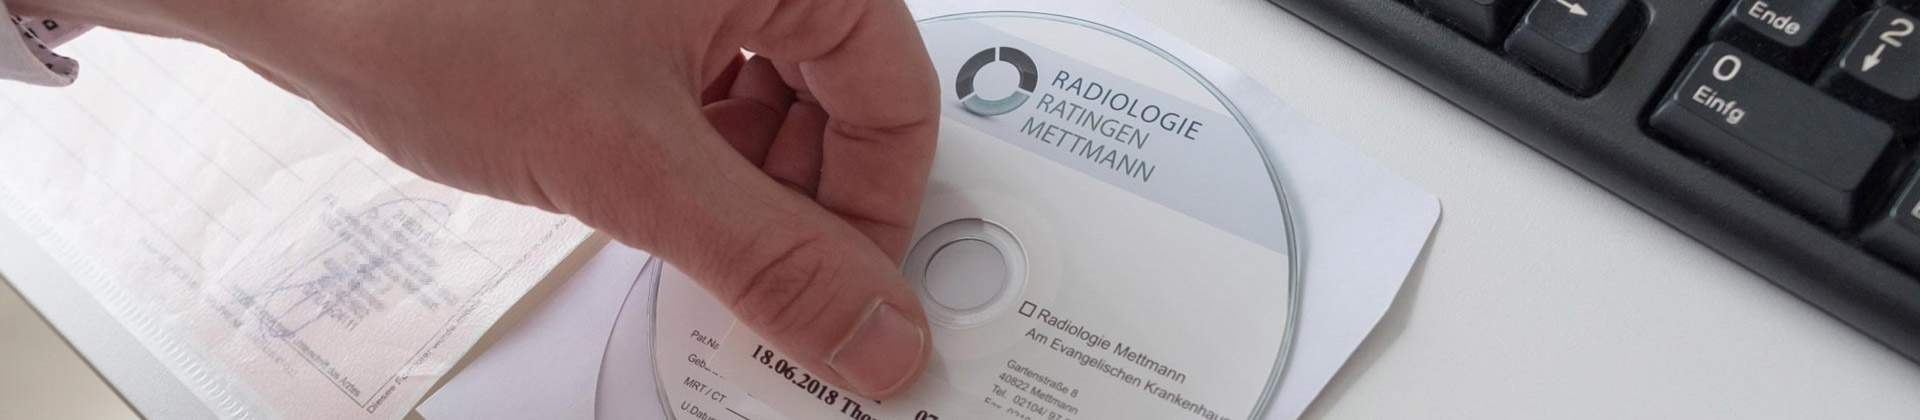 Impressum der Radiologie Ratingen Mettmann